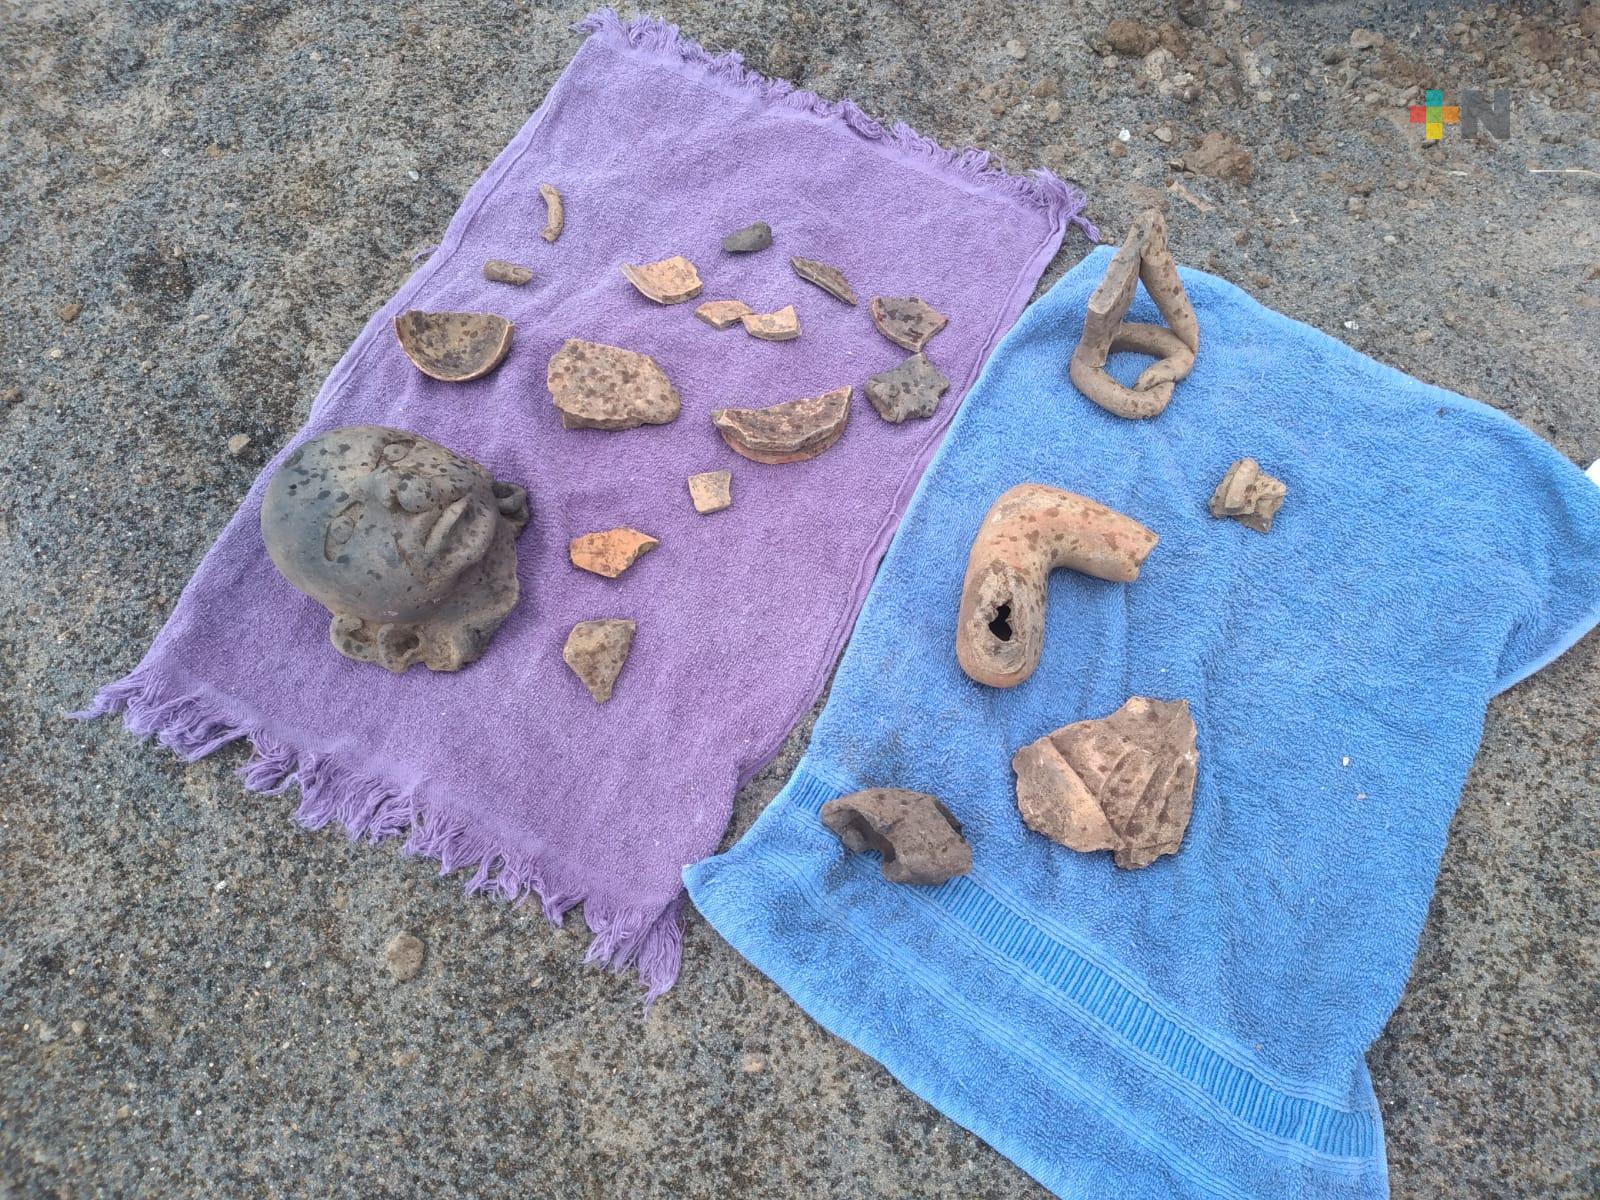 Hallan vestigios prehispánicos en dunas de Veracruz